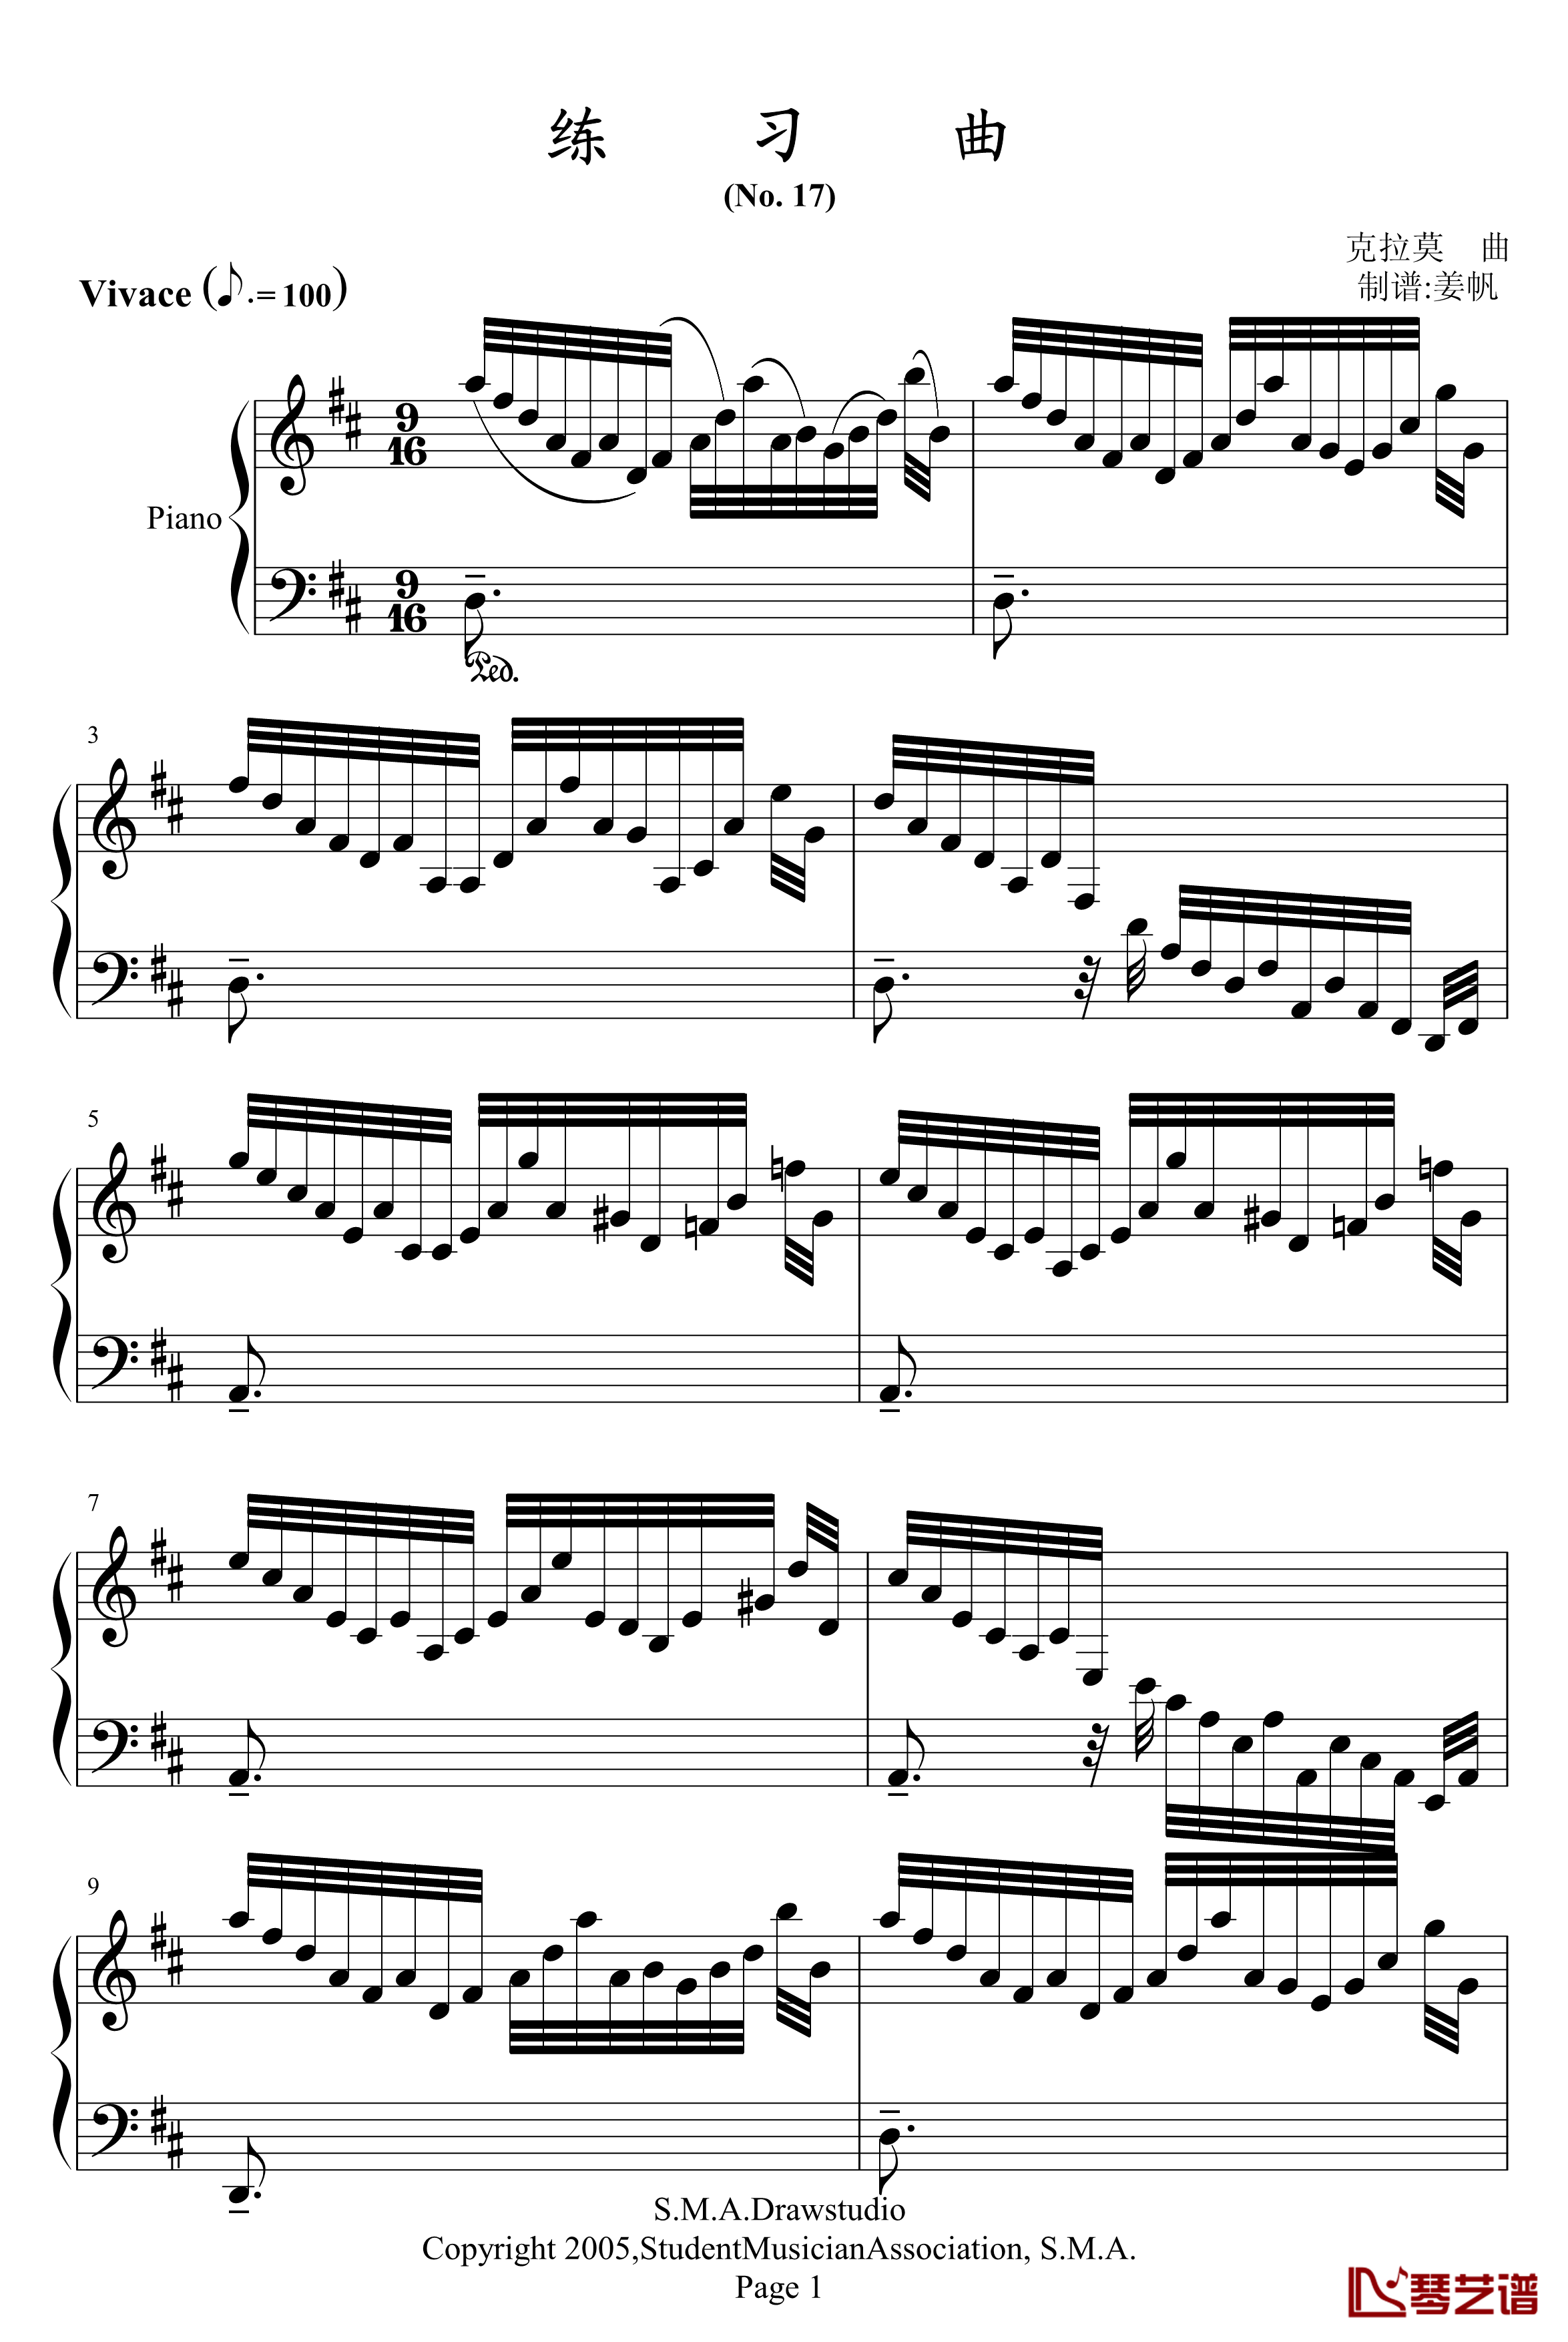 克拉莫练习曲钢琴谱-jonesoil上传版-克拉莫1